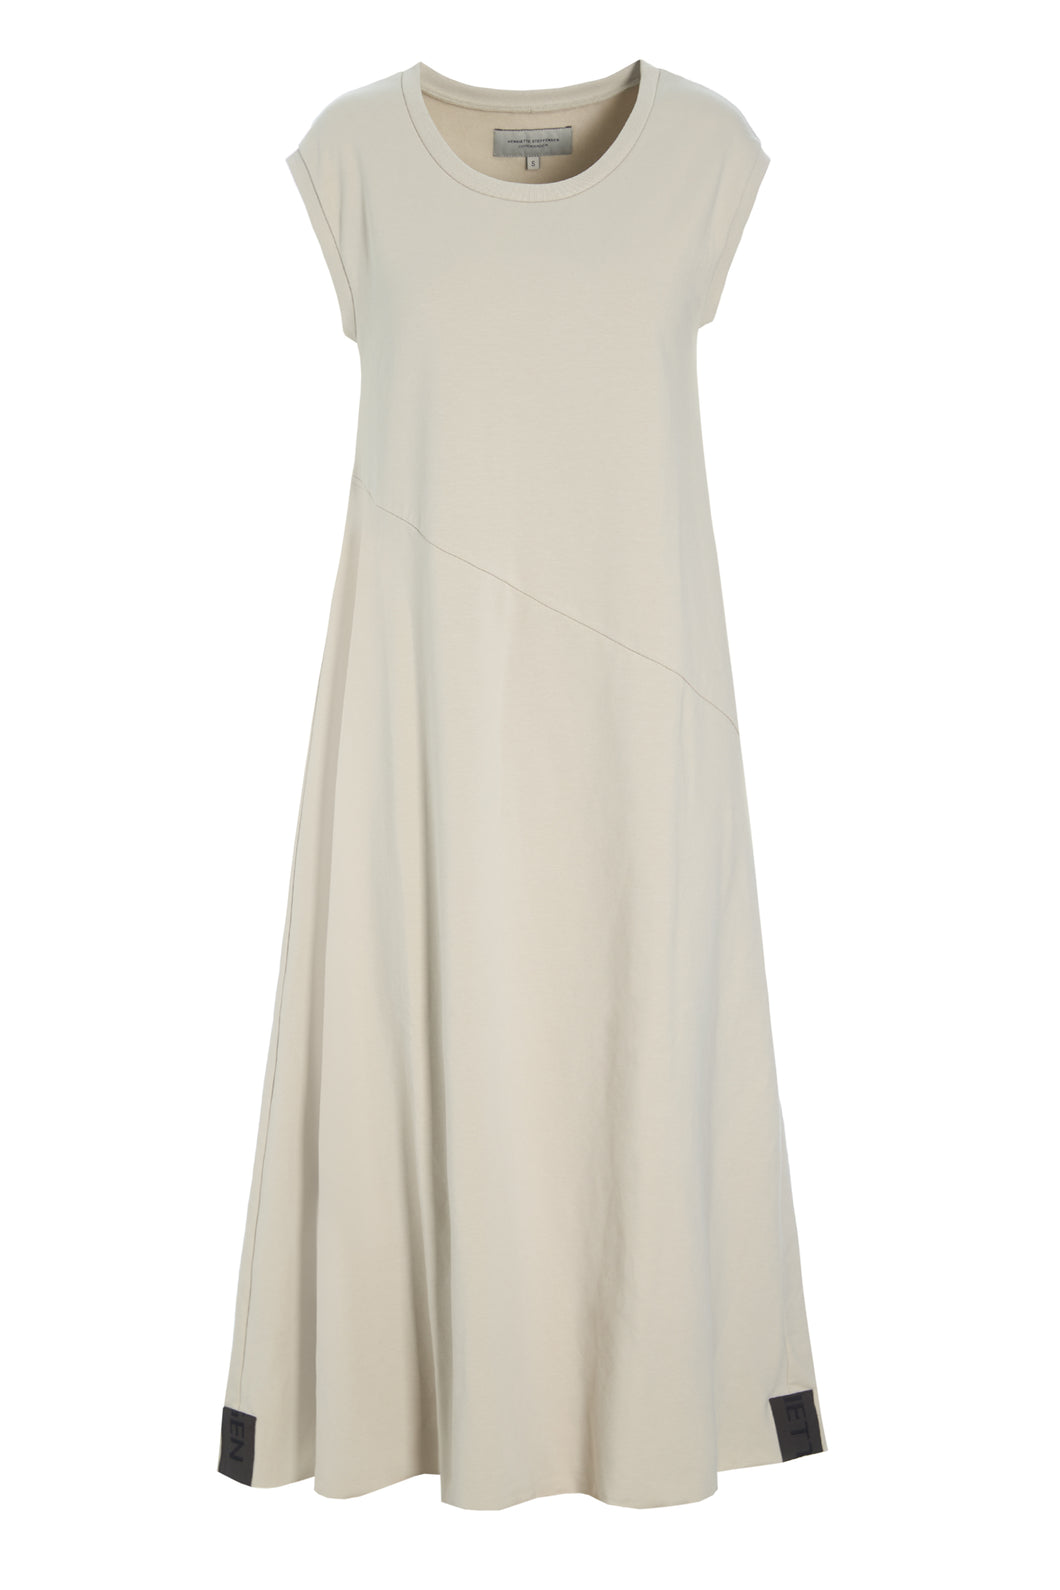 HENRIETTE STEFFENSEN Asymmetric Sweat Dress (73405)